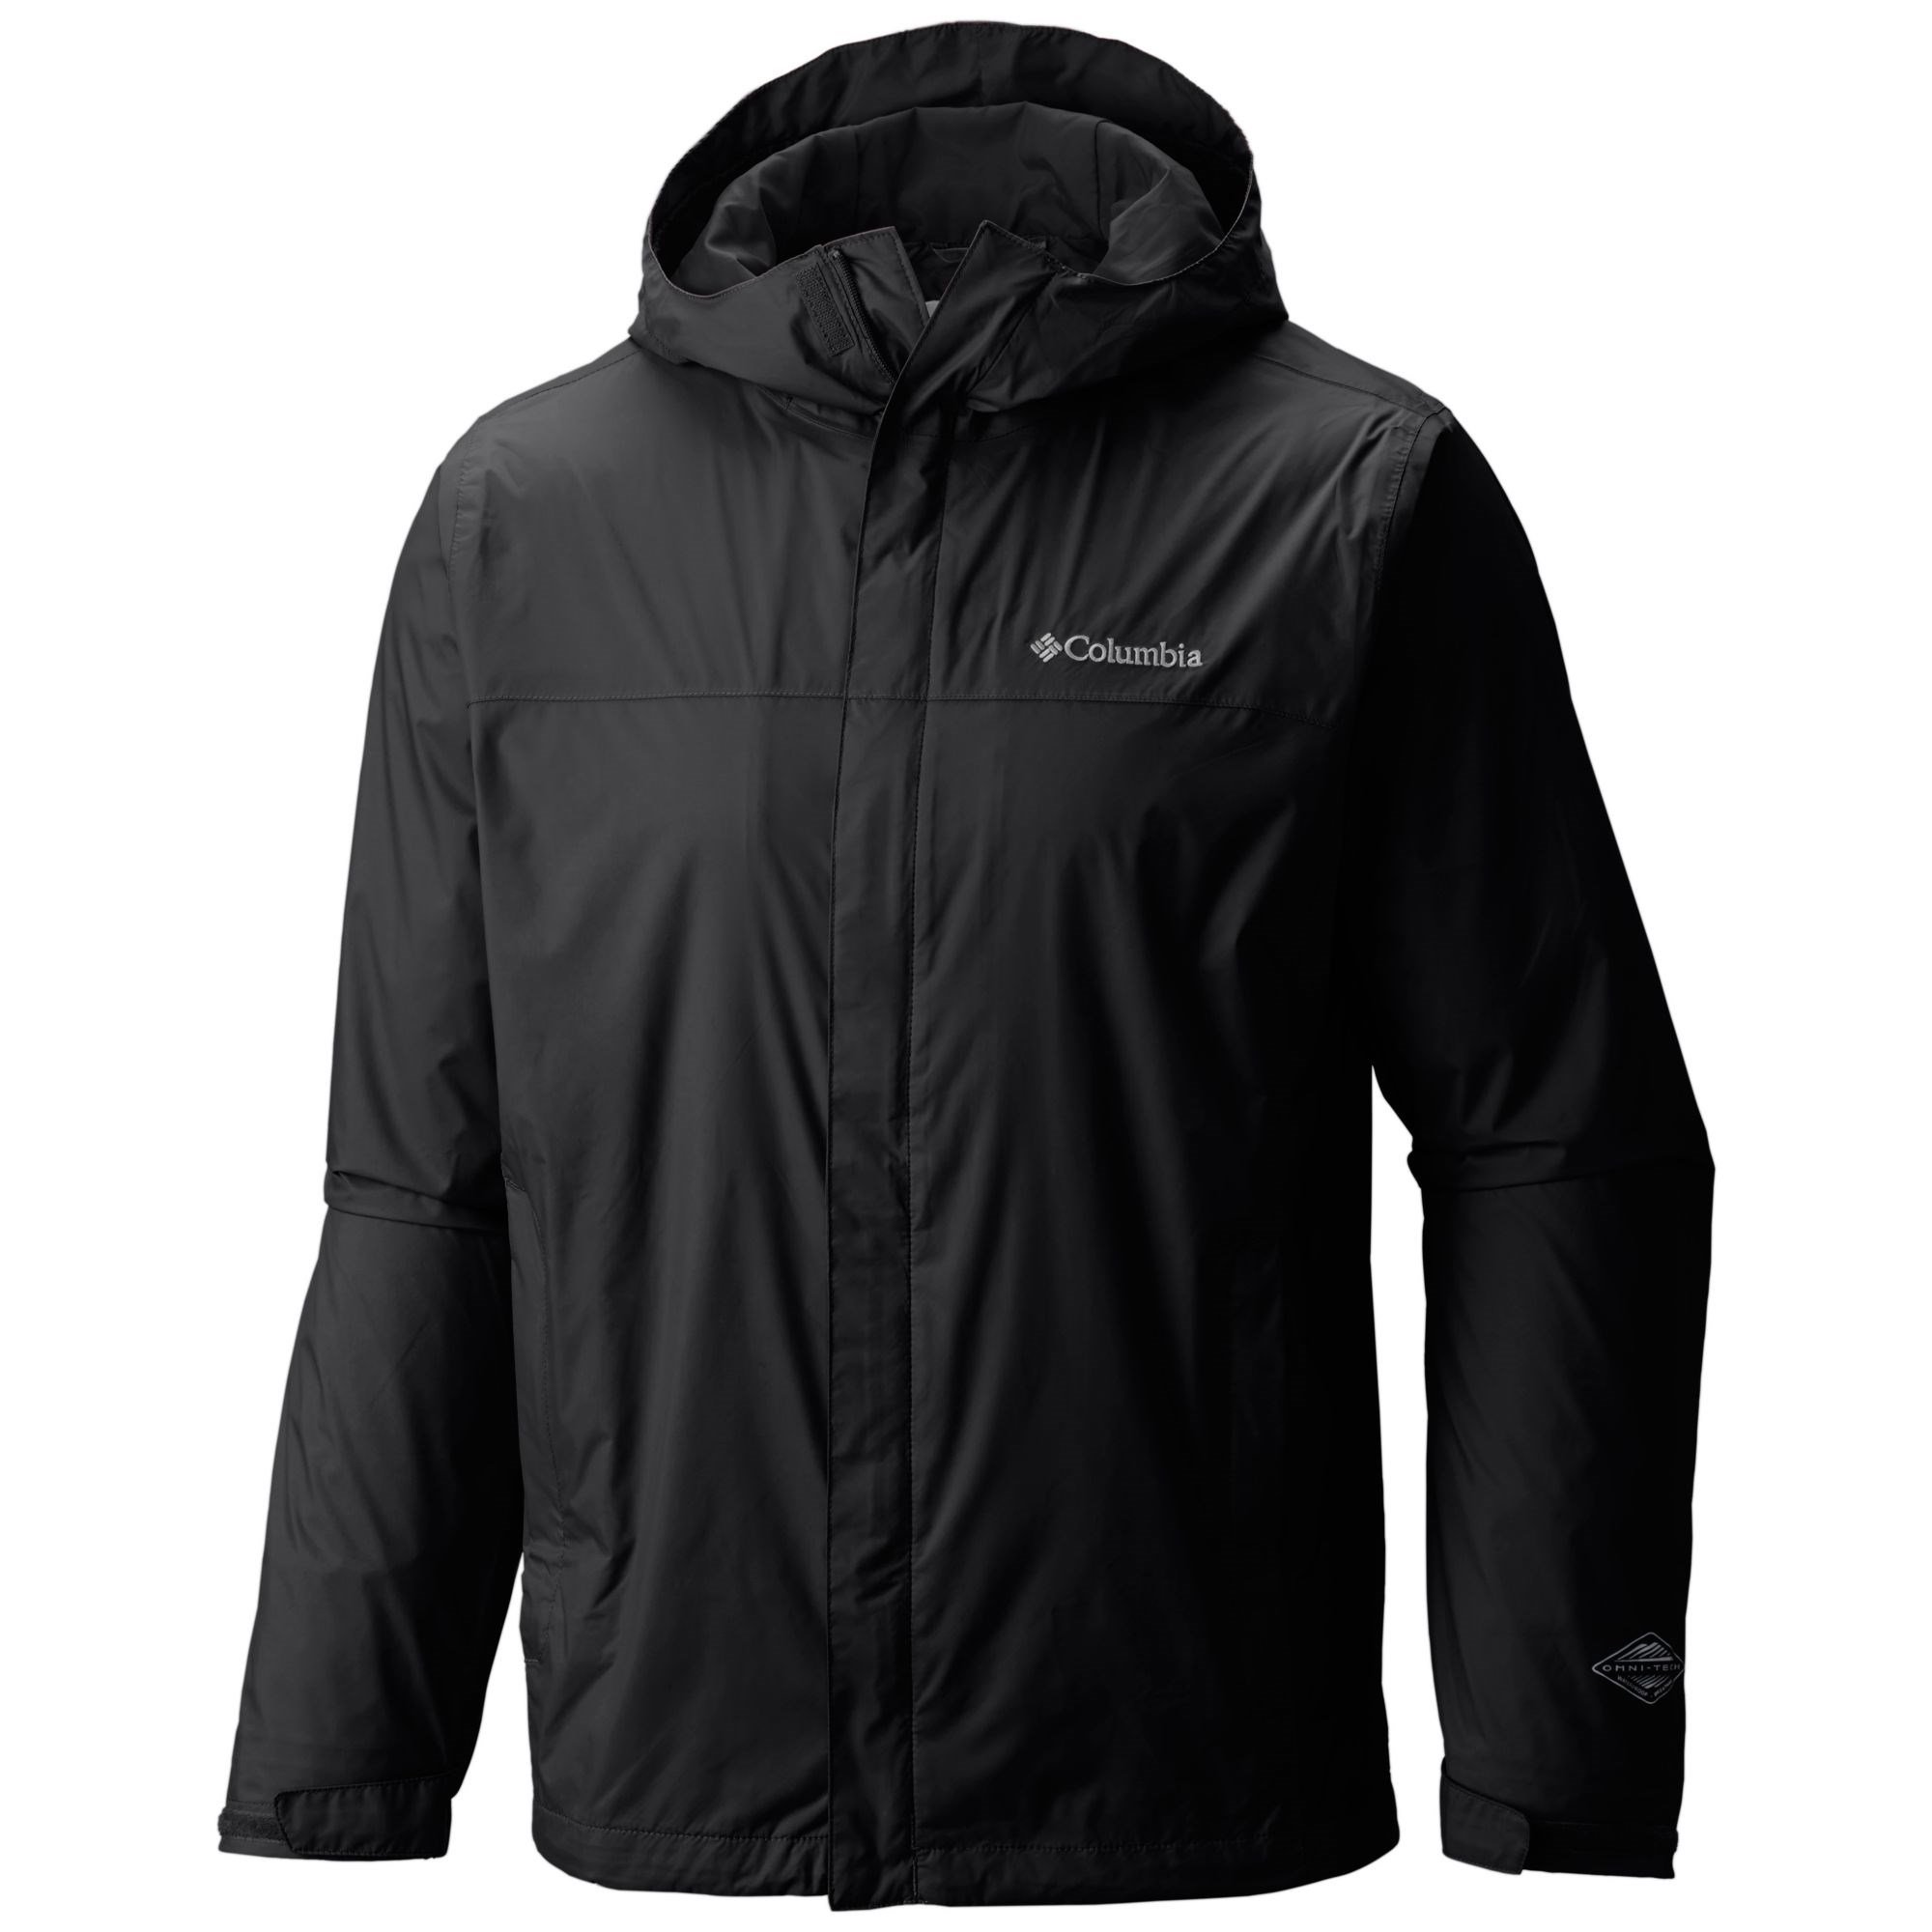 Columbia Watertight II Jacket Erkek Yağmurluk Ürün kodu: RM2433-010 |  Etichet Sport